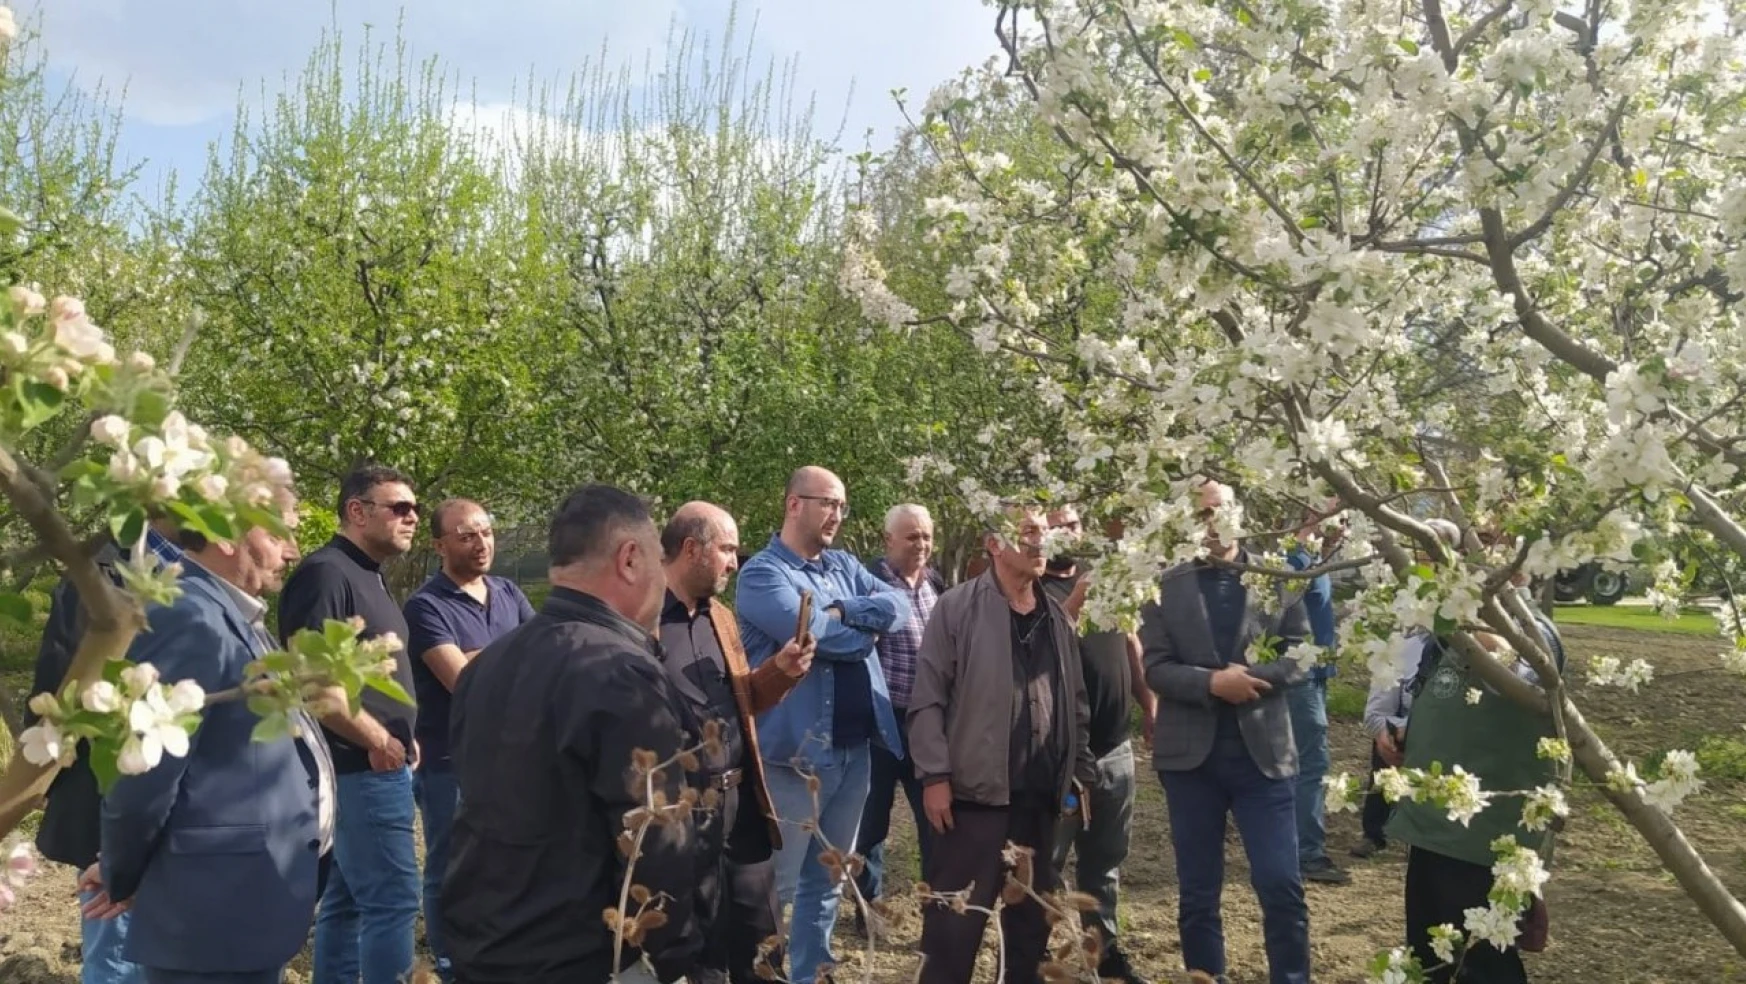 Erzincan'da uygulamalı 'Meyve Ağacı Budama' kursu verildi